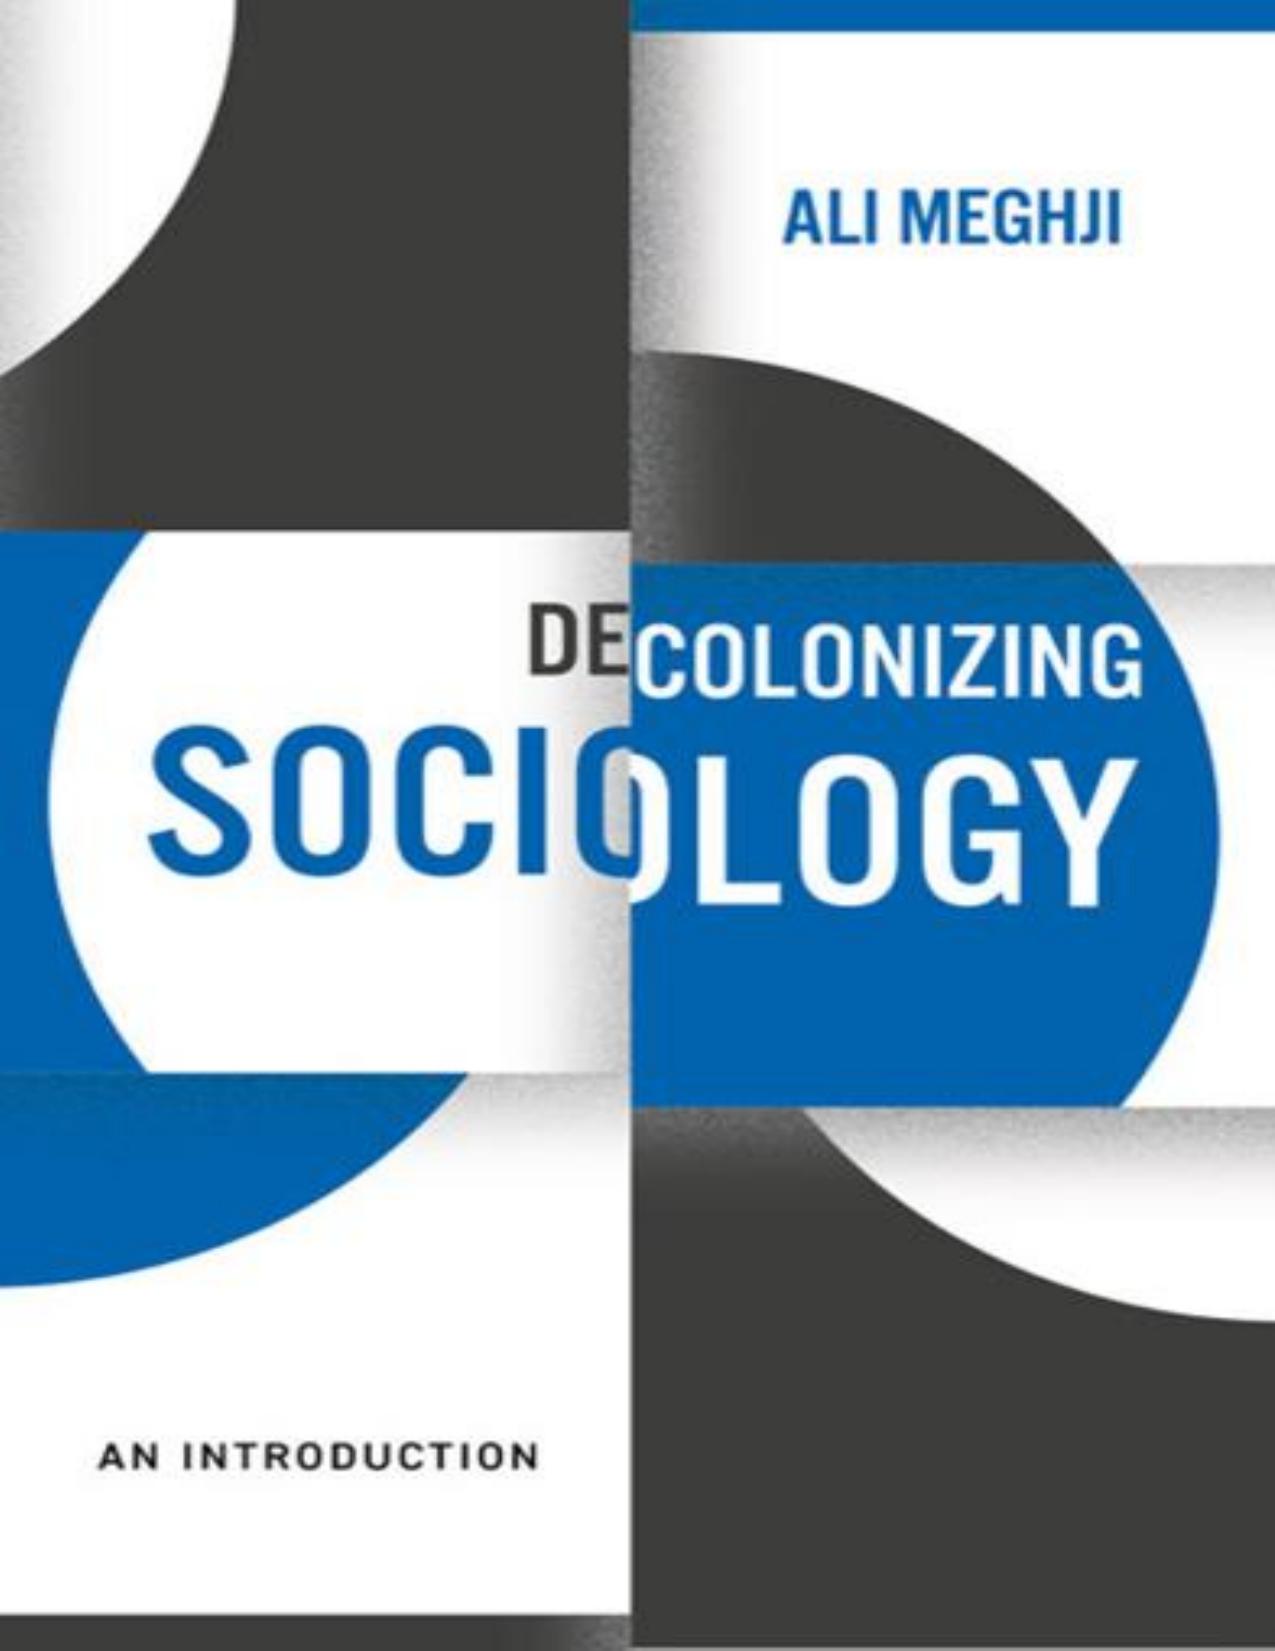 Decolonizing Sociology by Ali Meghji